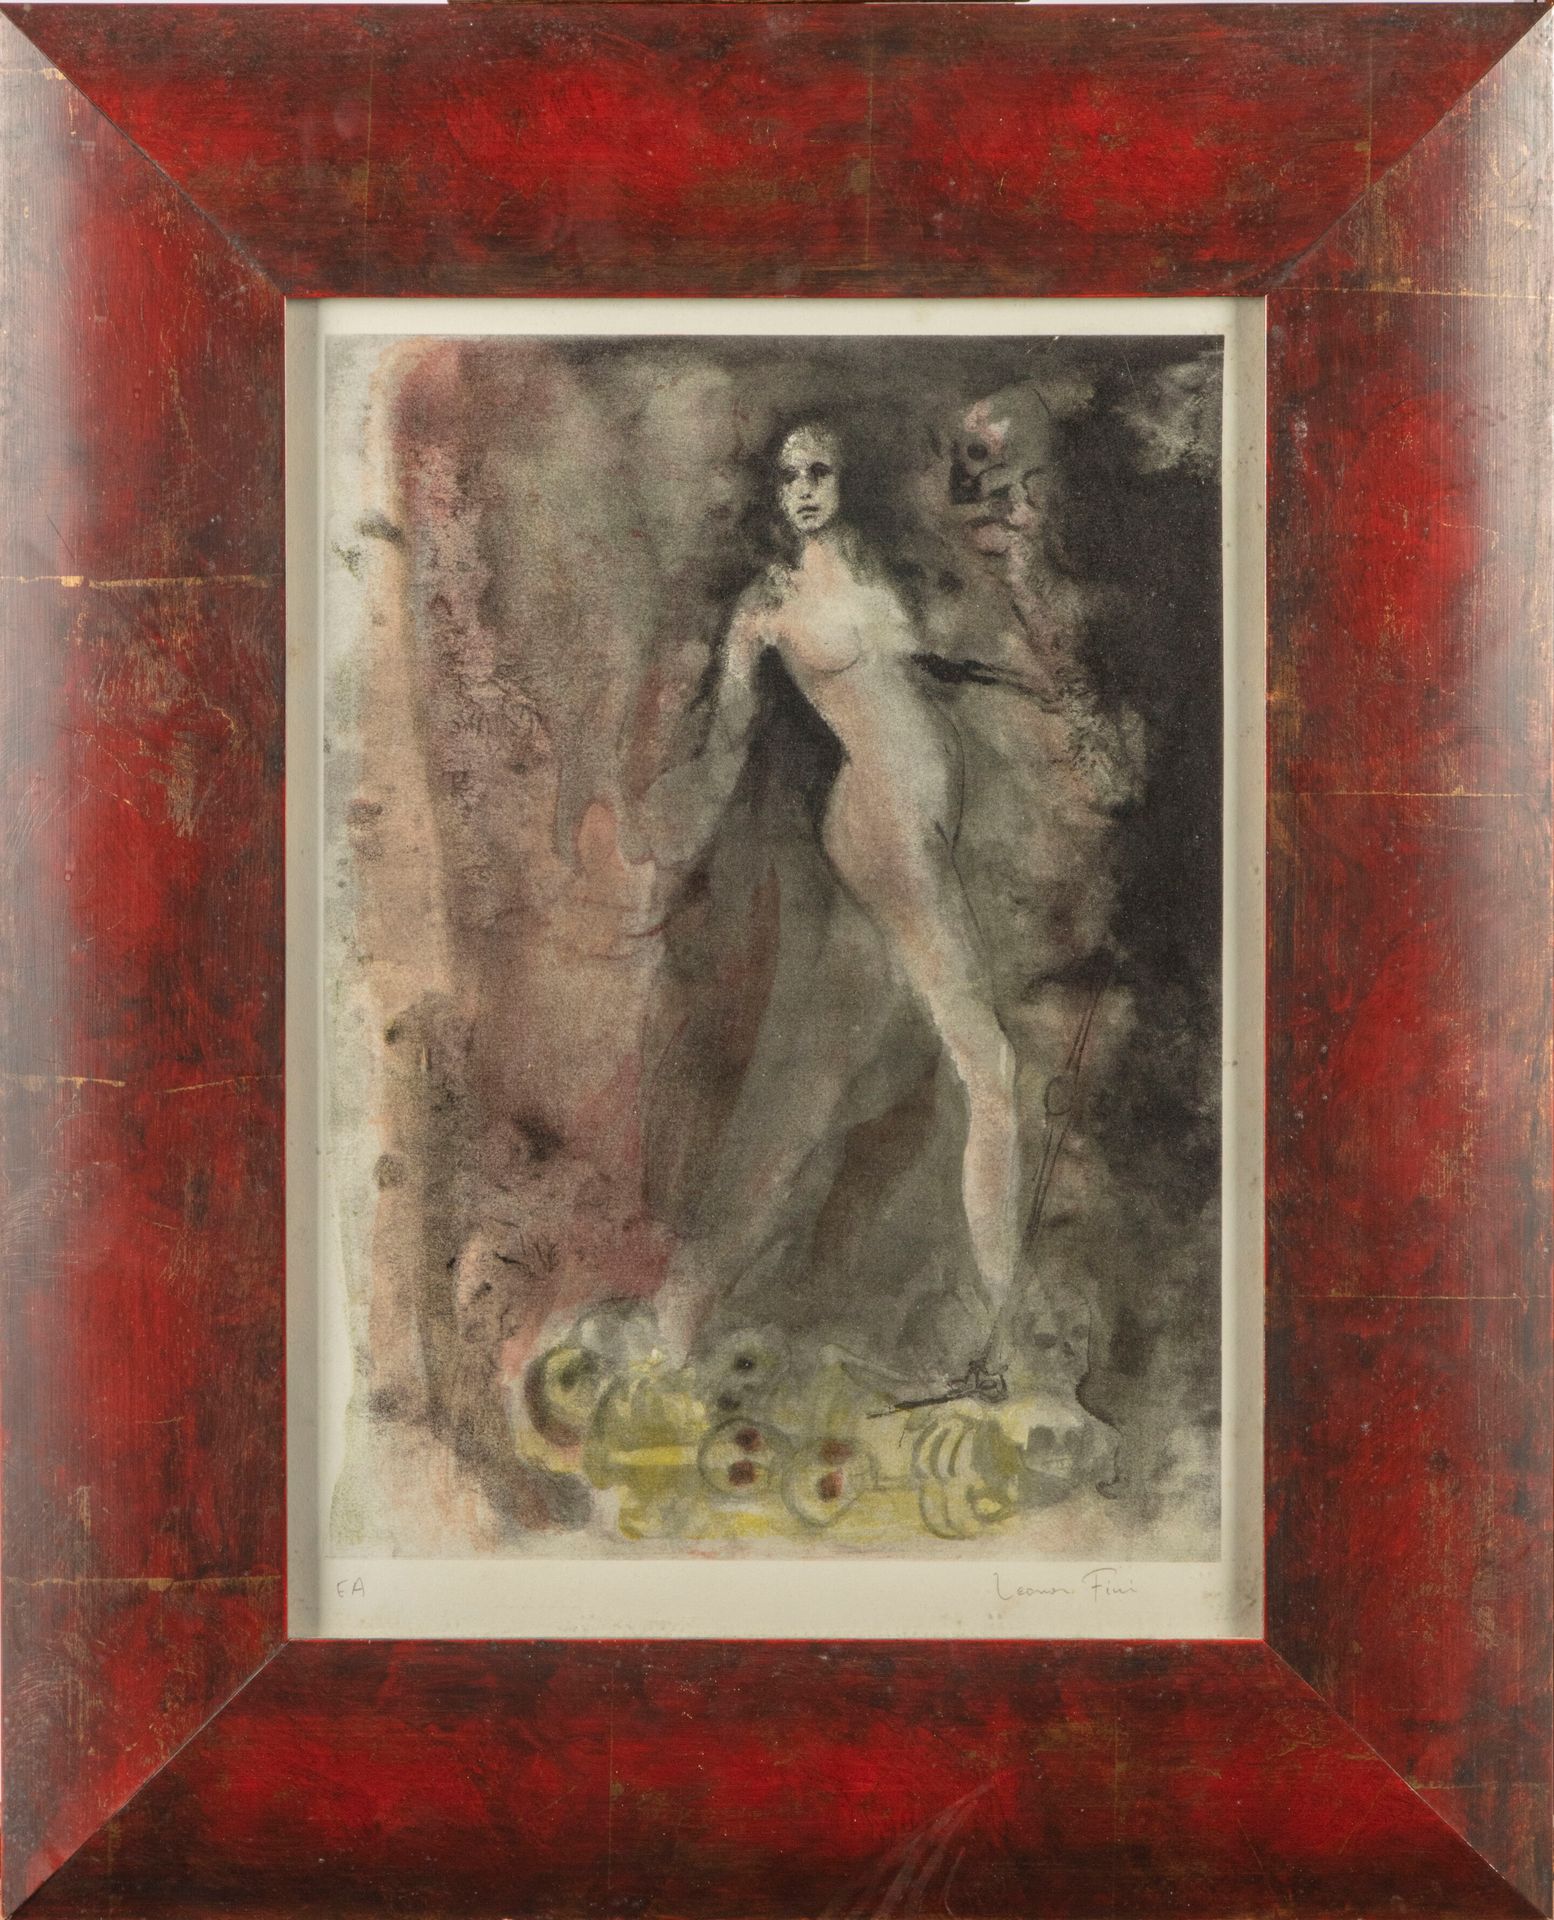 Null 莱昂诺-菲尼 (1907-1996)

死亡之舞

石版画，艺术家的证明，右下角签名

41 x 30 cm 正在观看